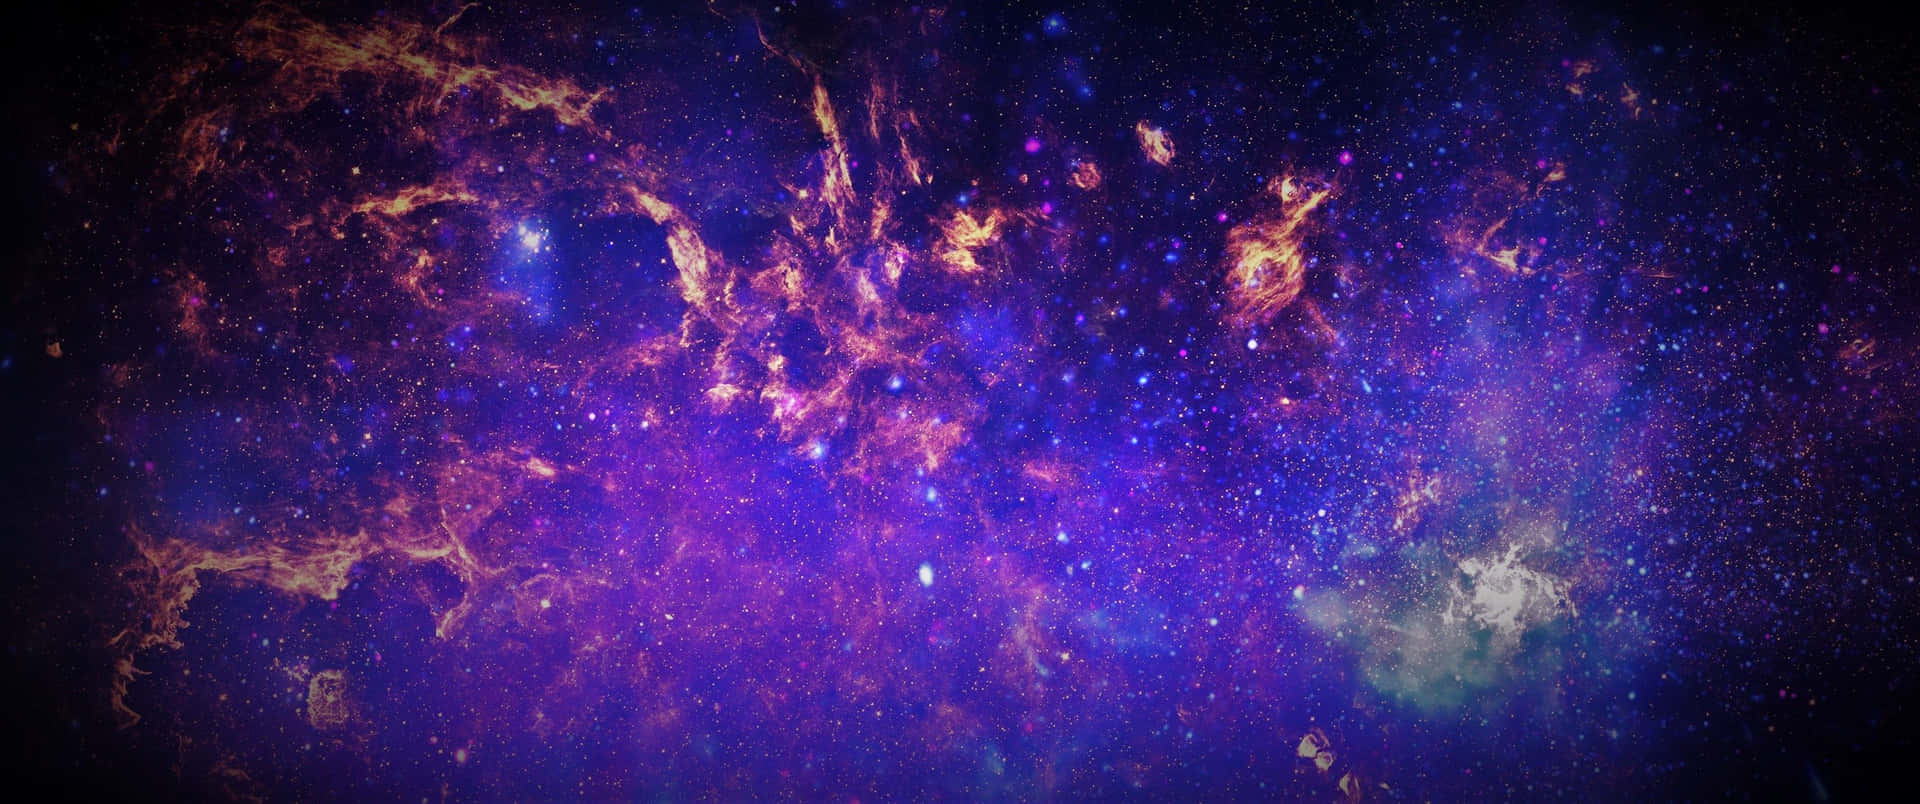 Unavasta Extensión De La Galaxia De La Vía Láctea Con Numerosas Estrellas Y Nebulosas Fondo de pantalla